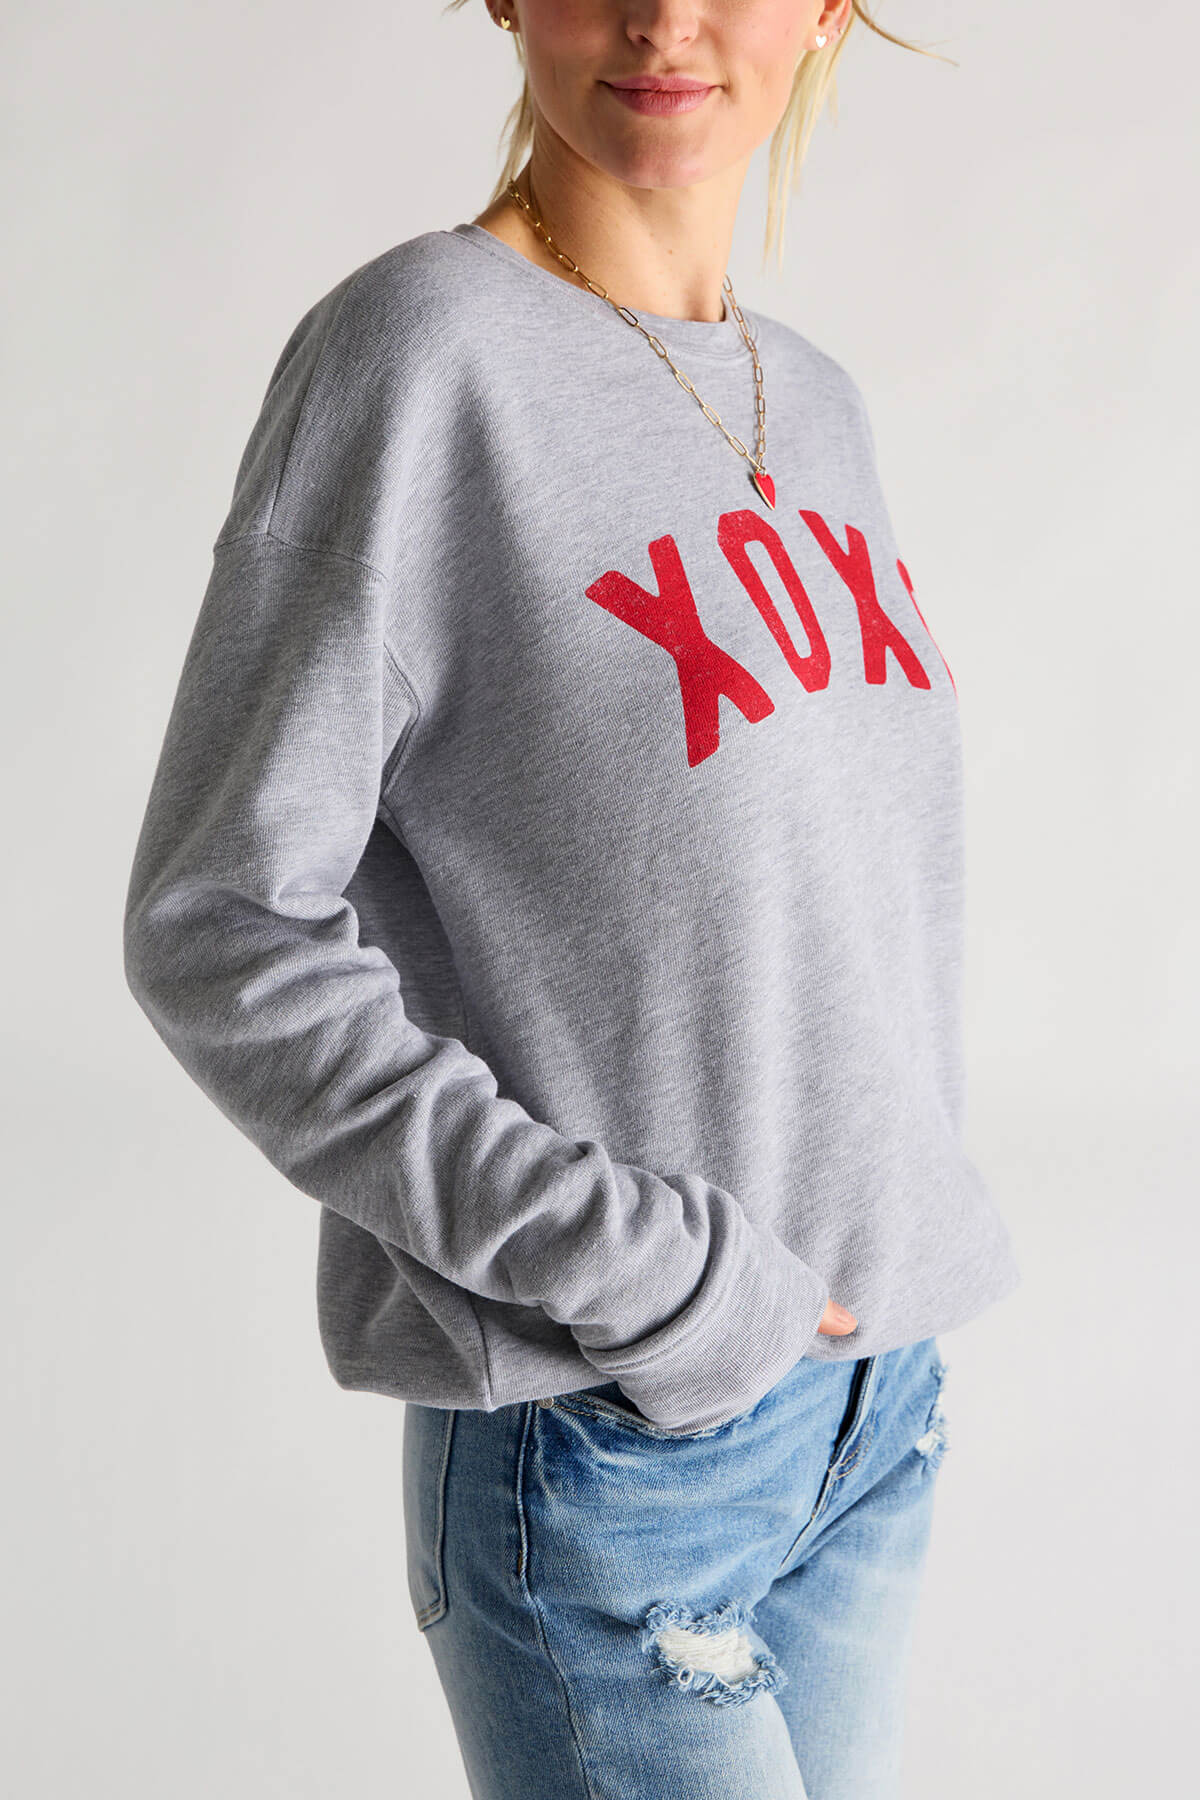 Oat Collective XOXO Sweatshirt